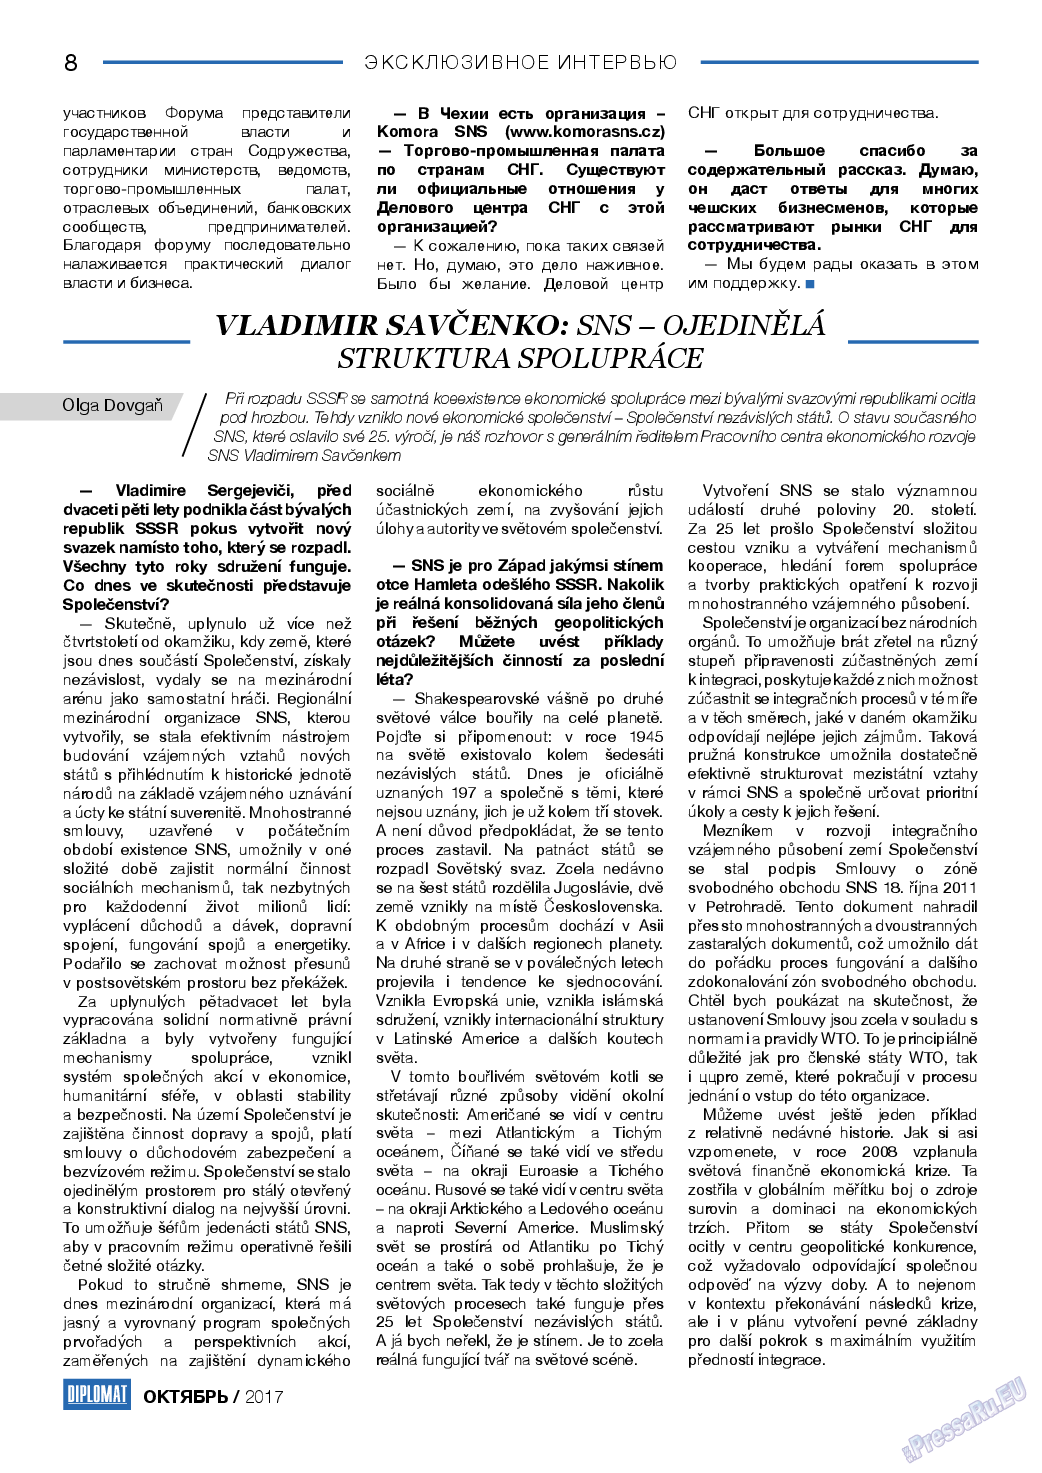 Diplomat, газета. 2017 №97 стр.8